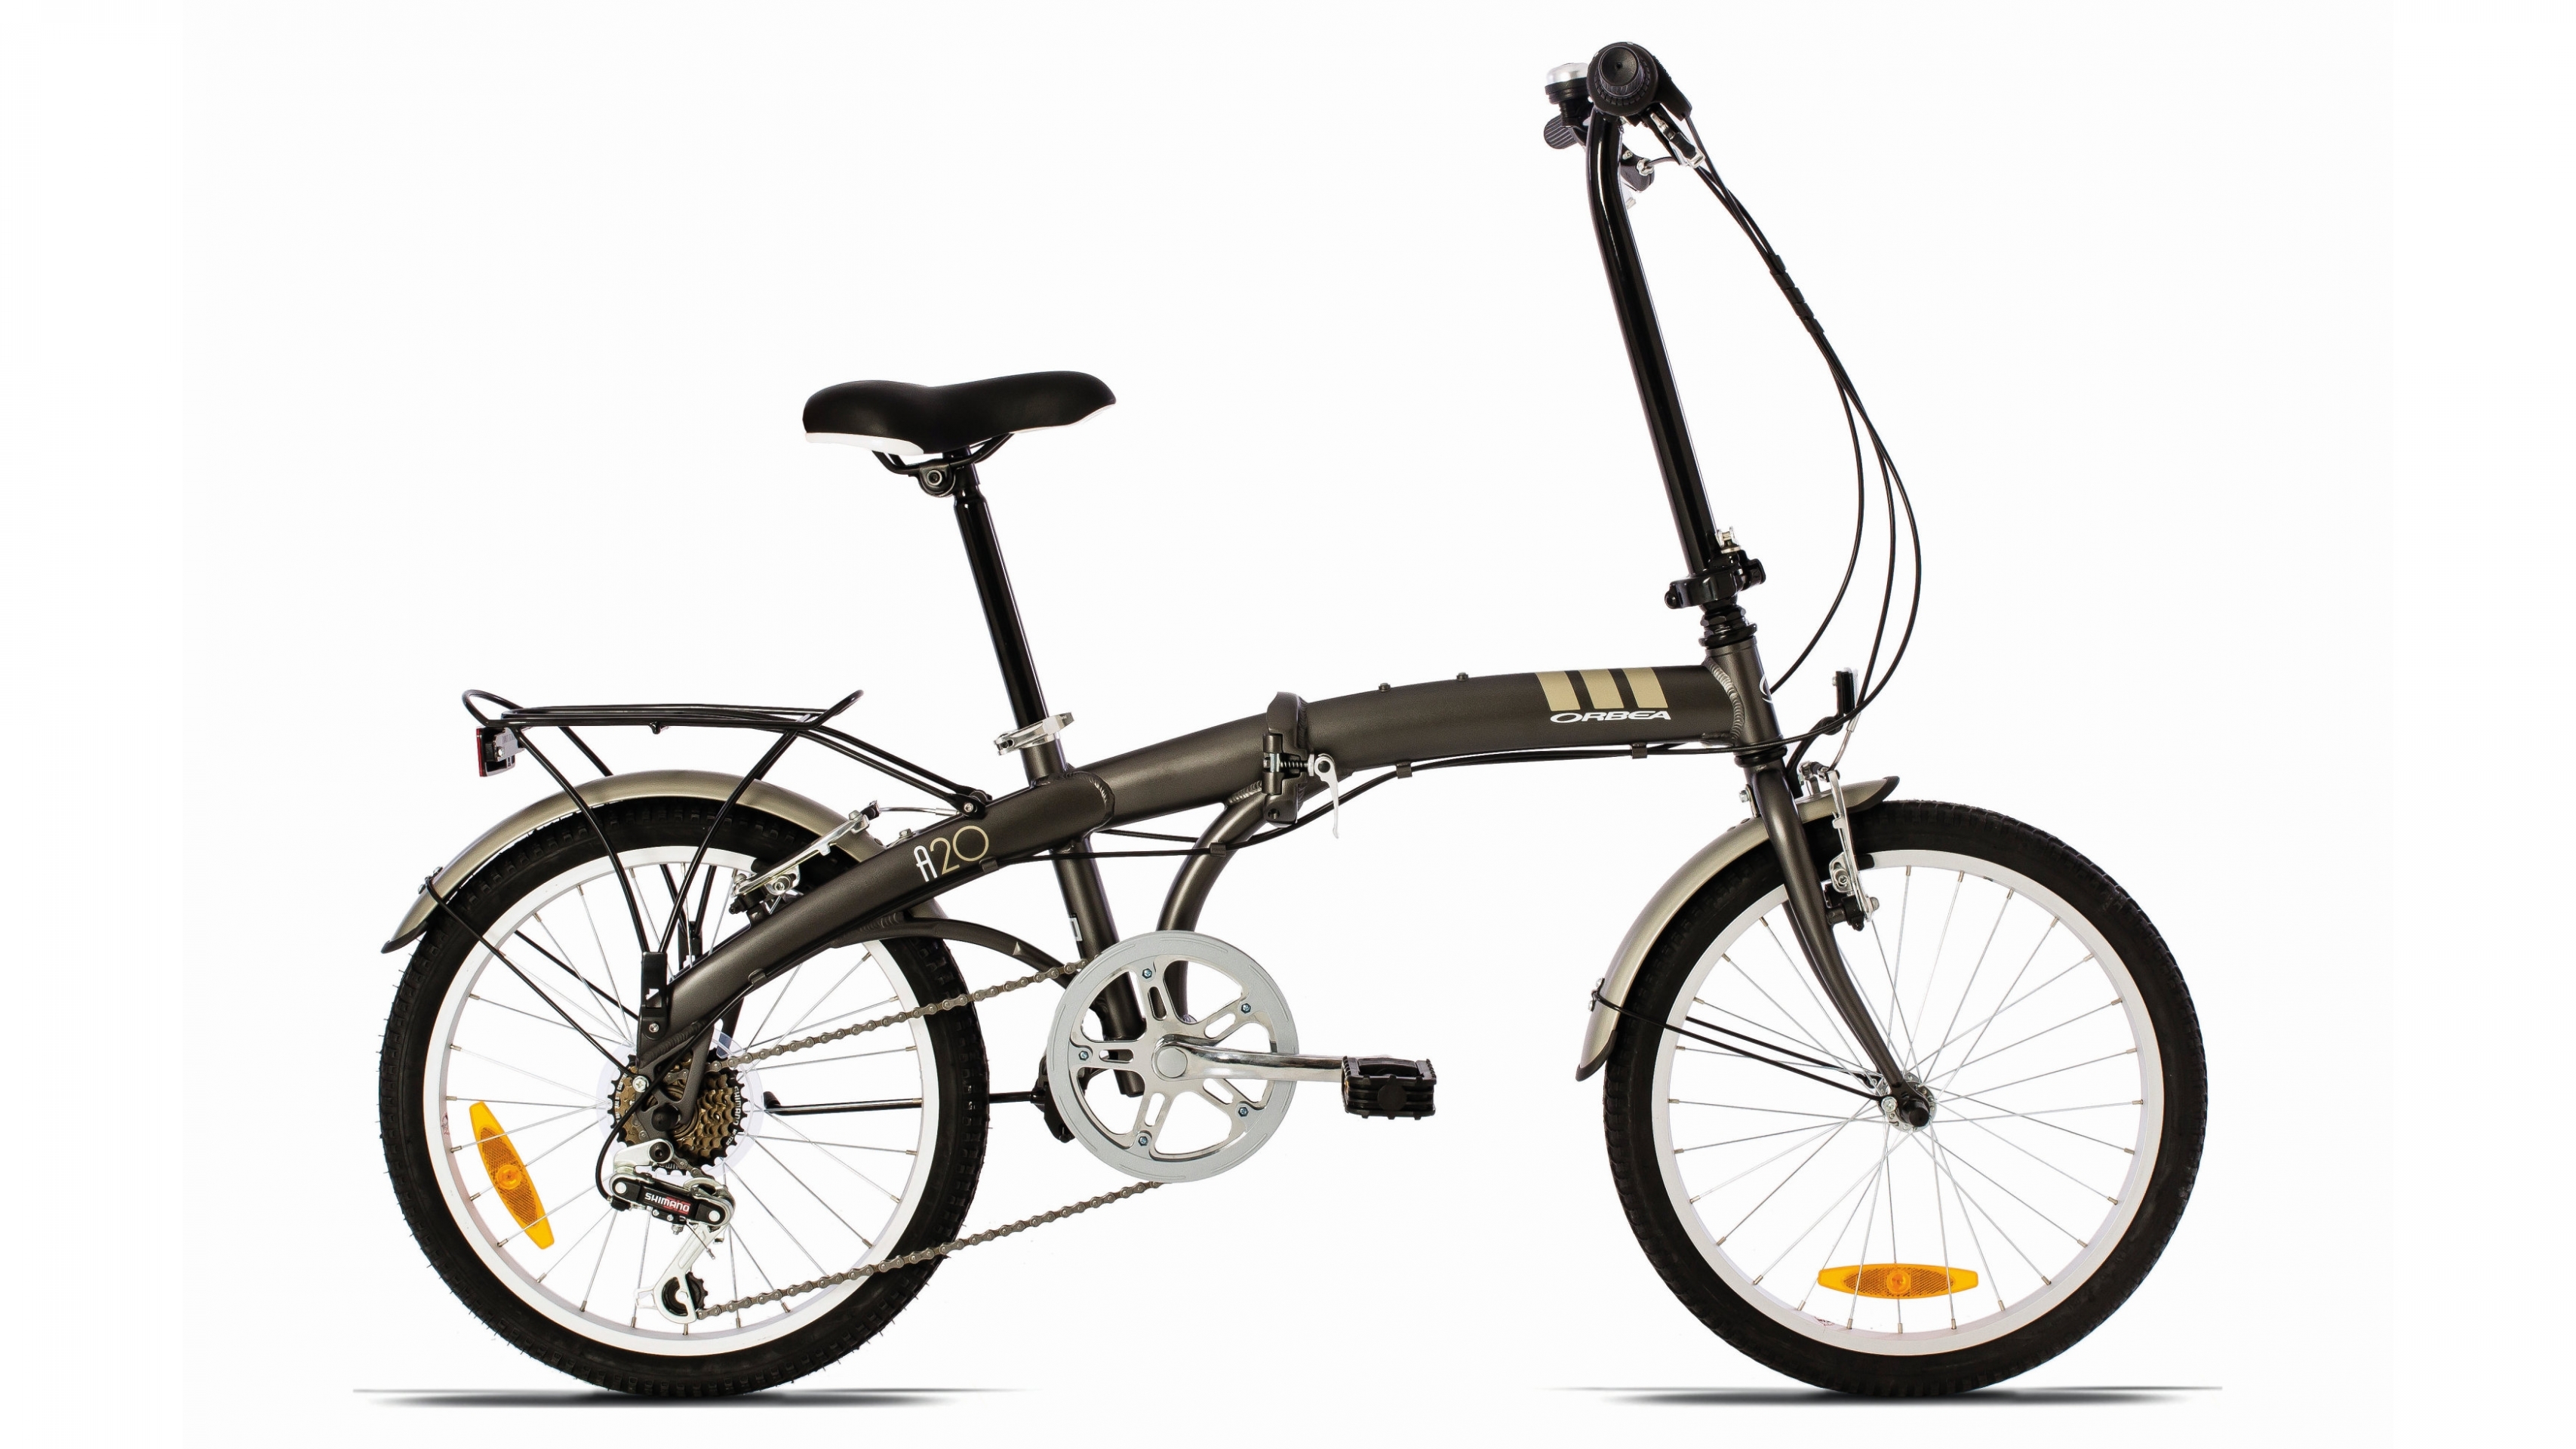 Купить легкий взрослый велосипед. Городской велосипед Orbea Folding a20. Велосипед Orbea 20. Велосипед складной Vincent City line Folding. Велосипед Пегасус велосипед (складной) Pegasus easy Step 3 (2015).